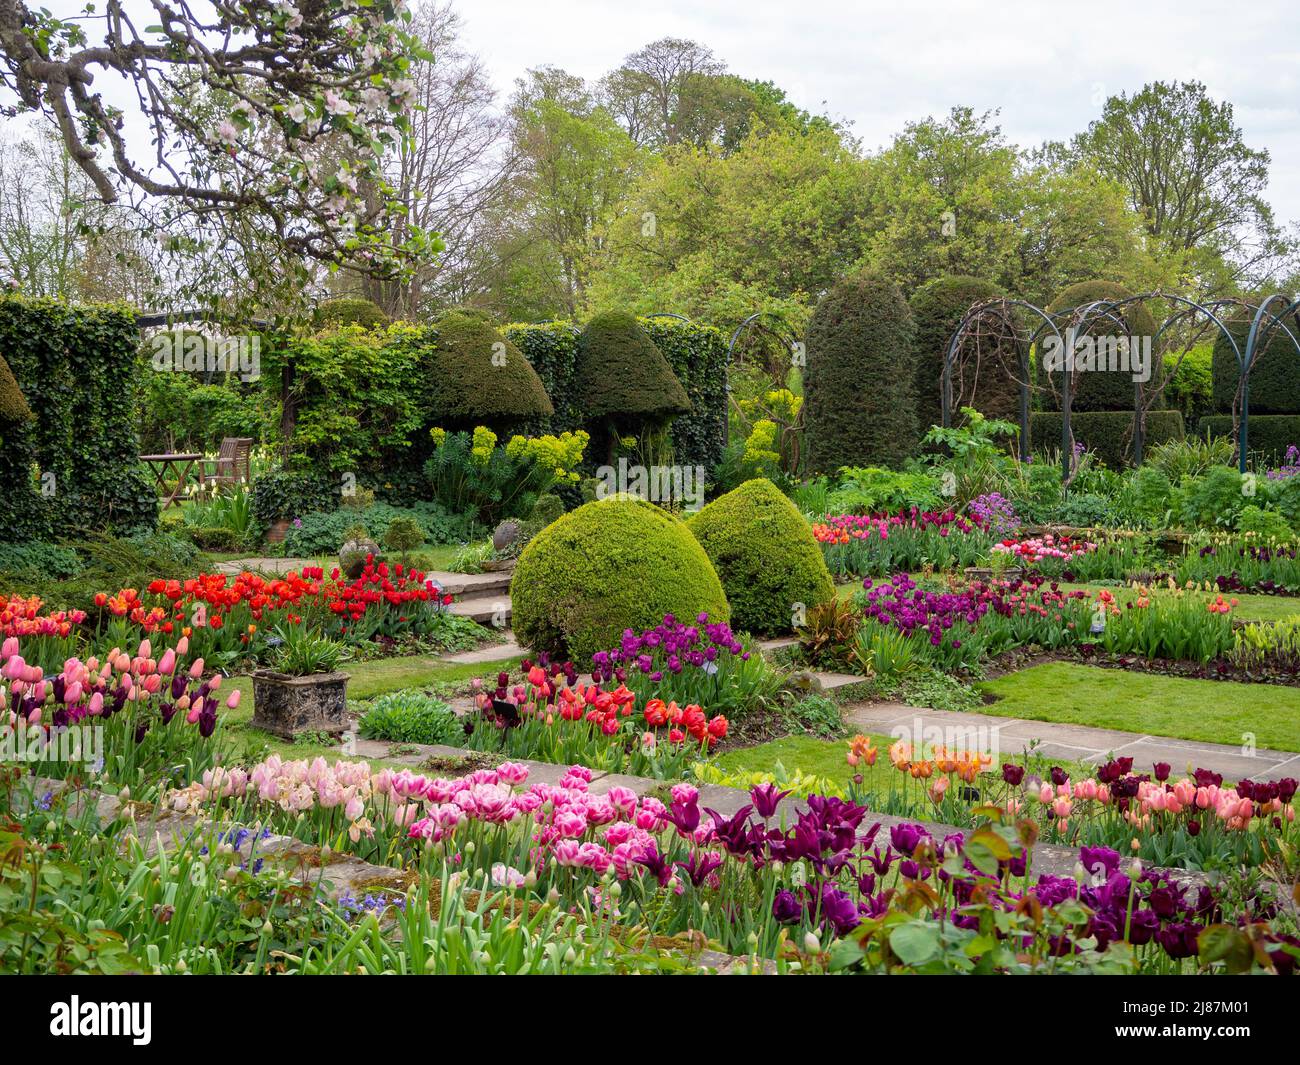 Chenies Manor Garden. Bunte Tulpenarten in der Pflanze Grenzen mit Topiary, Trellia und Graswegen im versunkenen Garten. Stockfoto